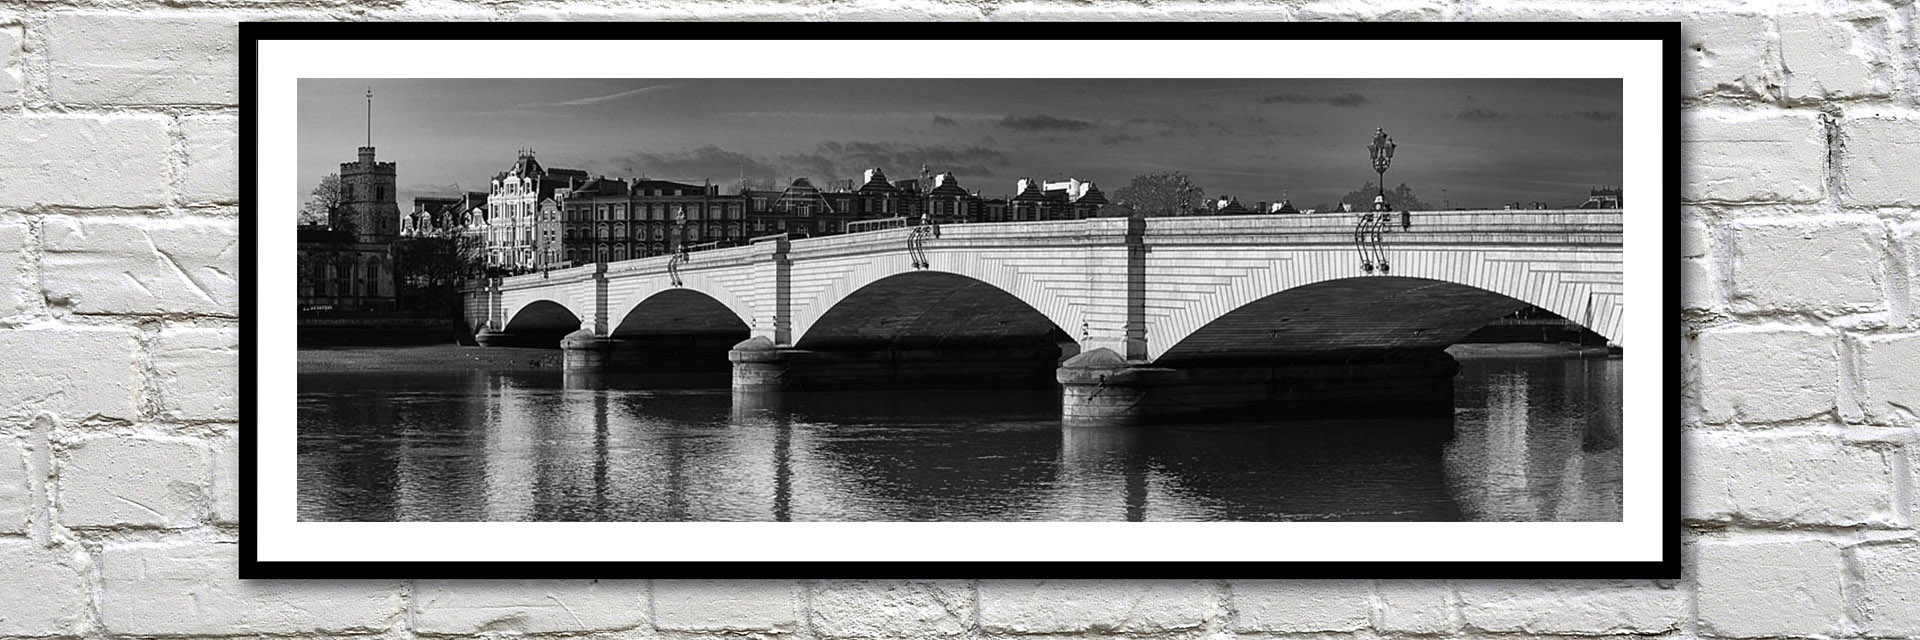 Office art ideas  River Thames Bridges